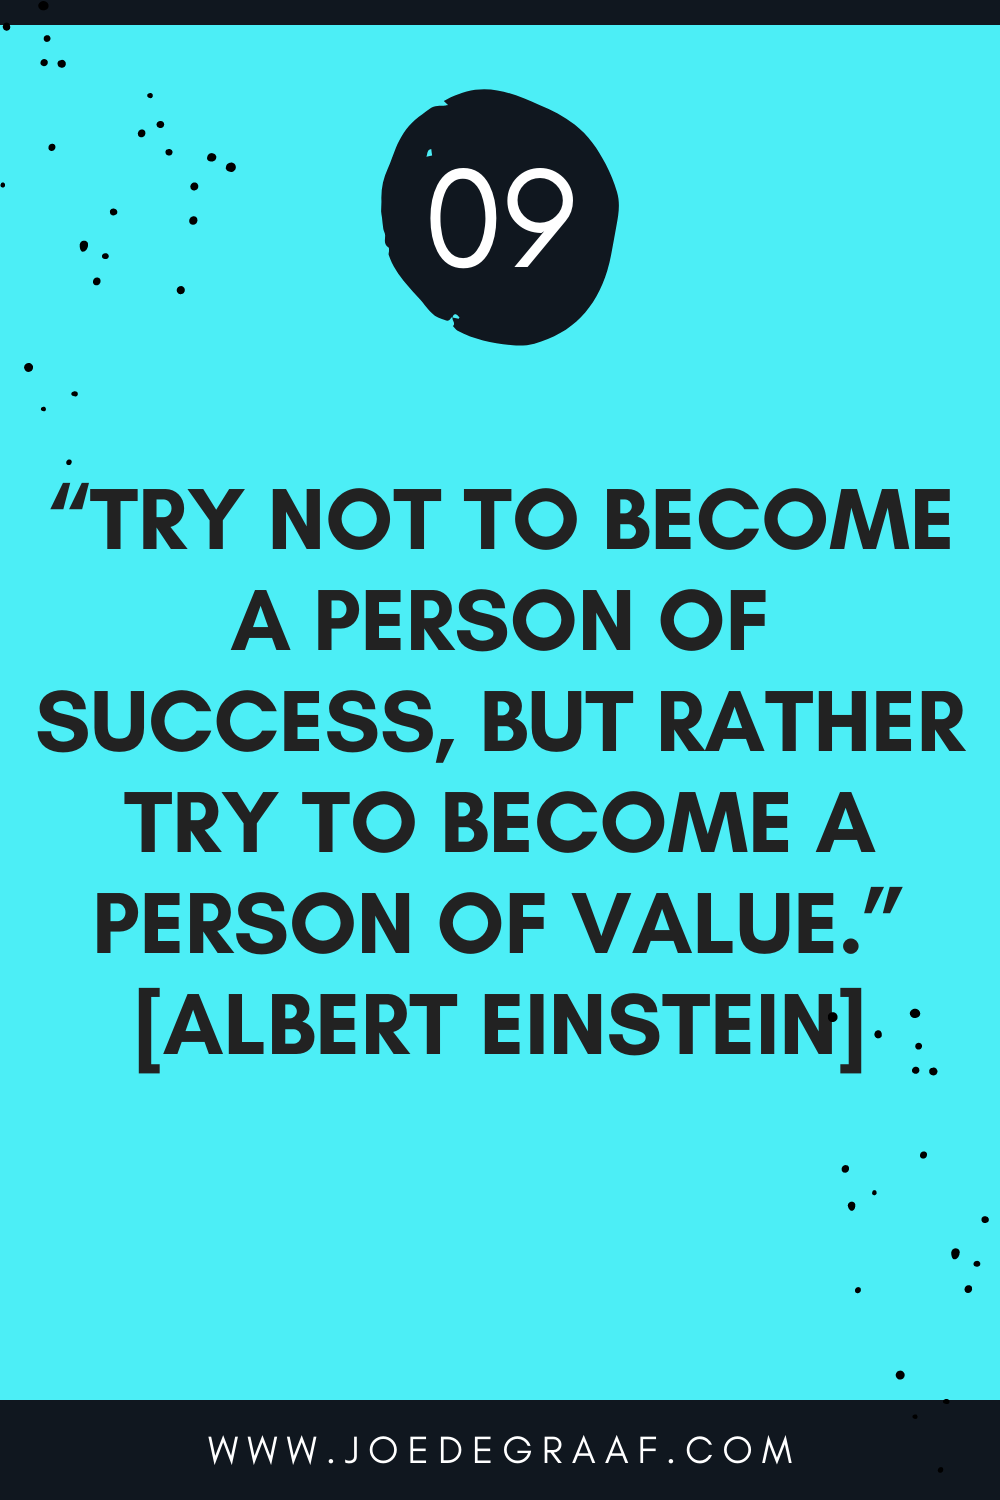 Einstein quote on work motivation